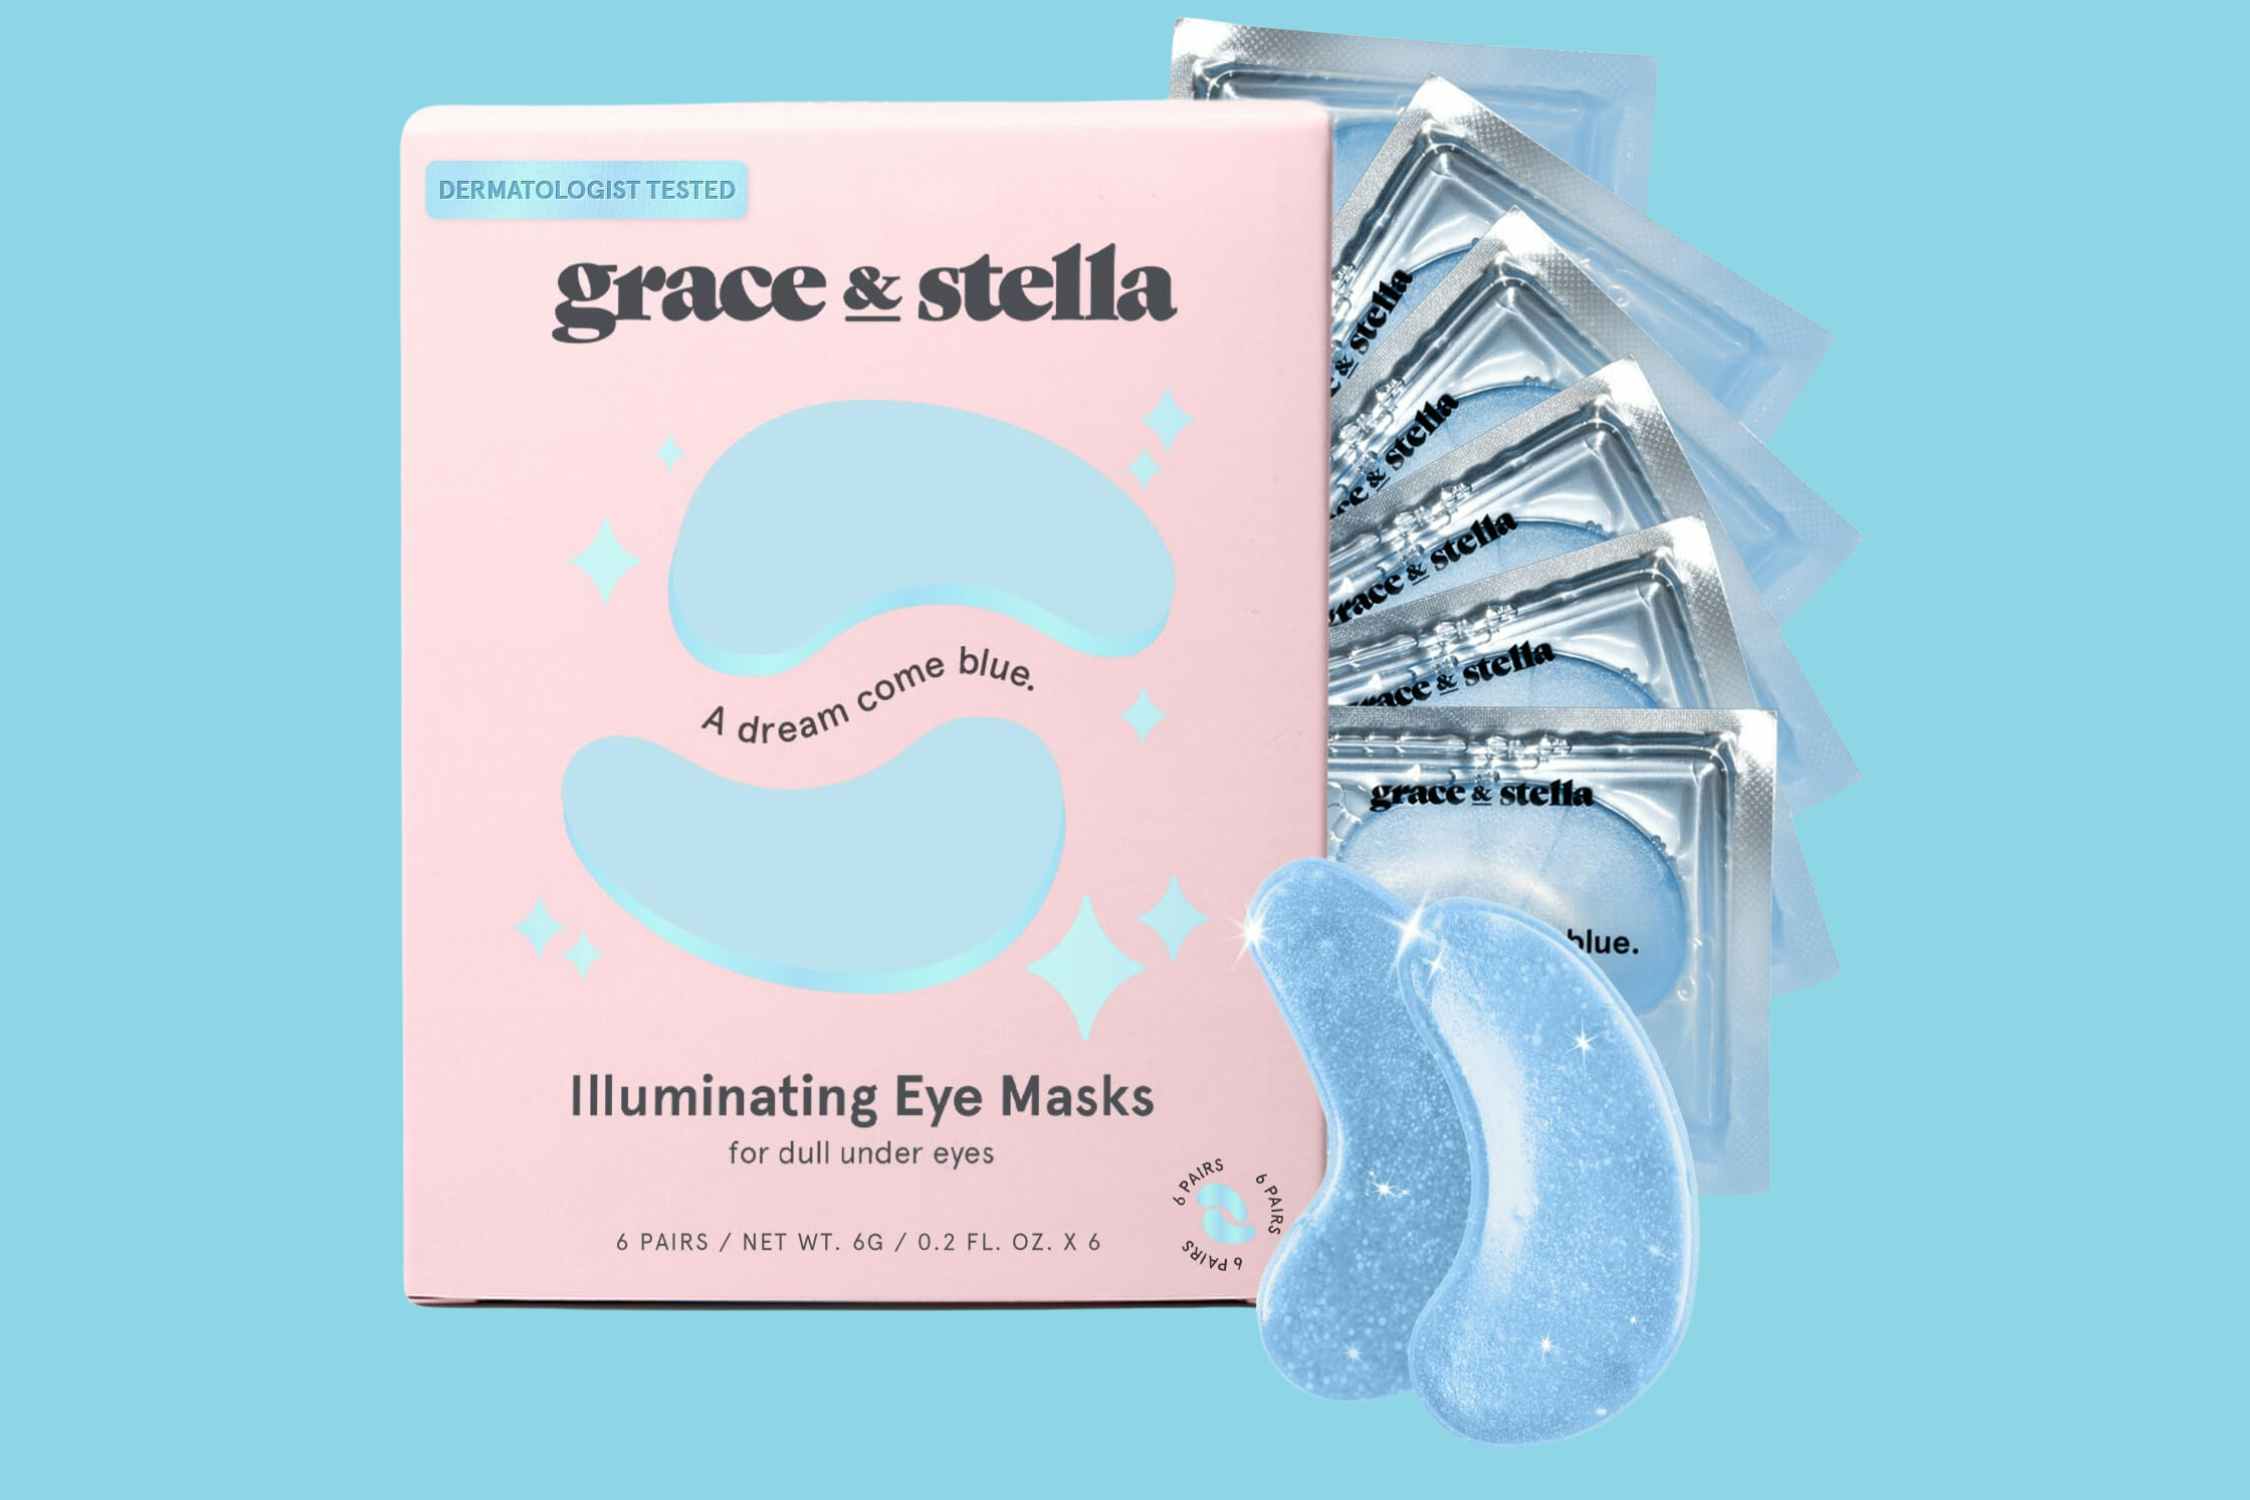 Grace & Stella Eye Masks, as Low as $7.45 on Amazon (Save 50%)